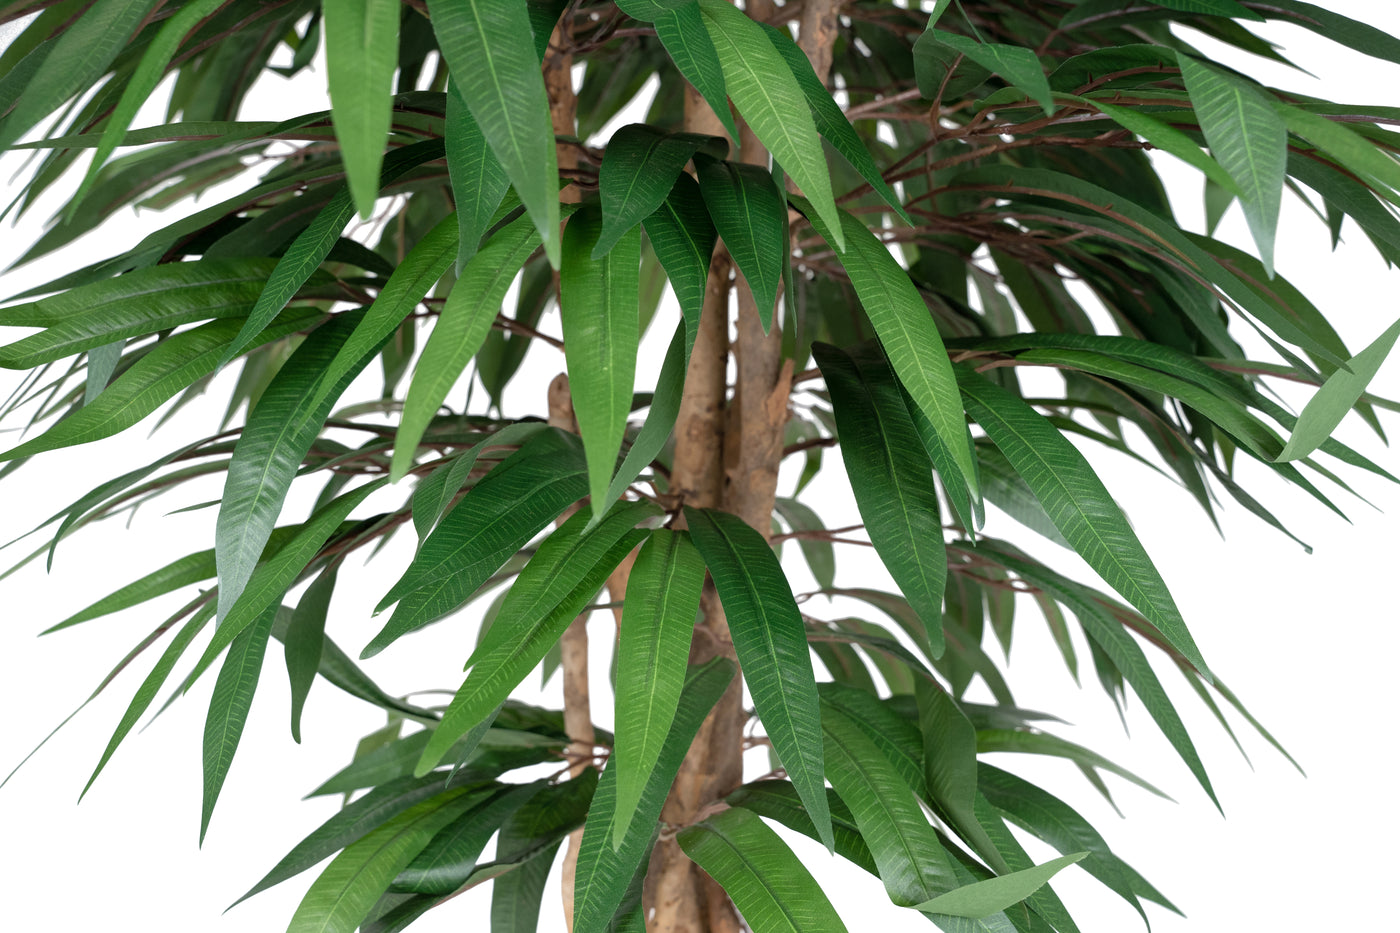 Ficus artificial longifolia cu 864 frunze H180 cm